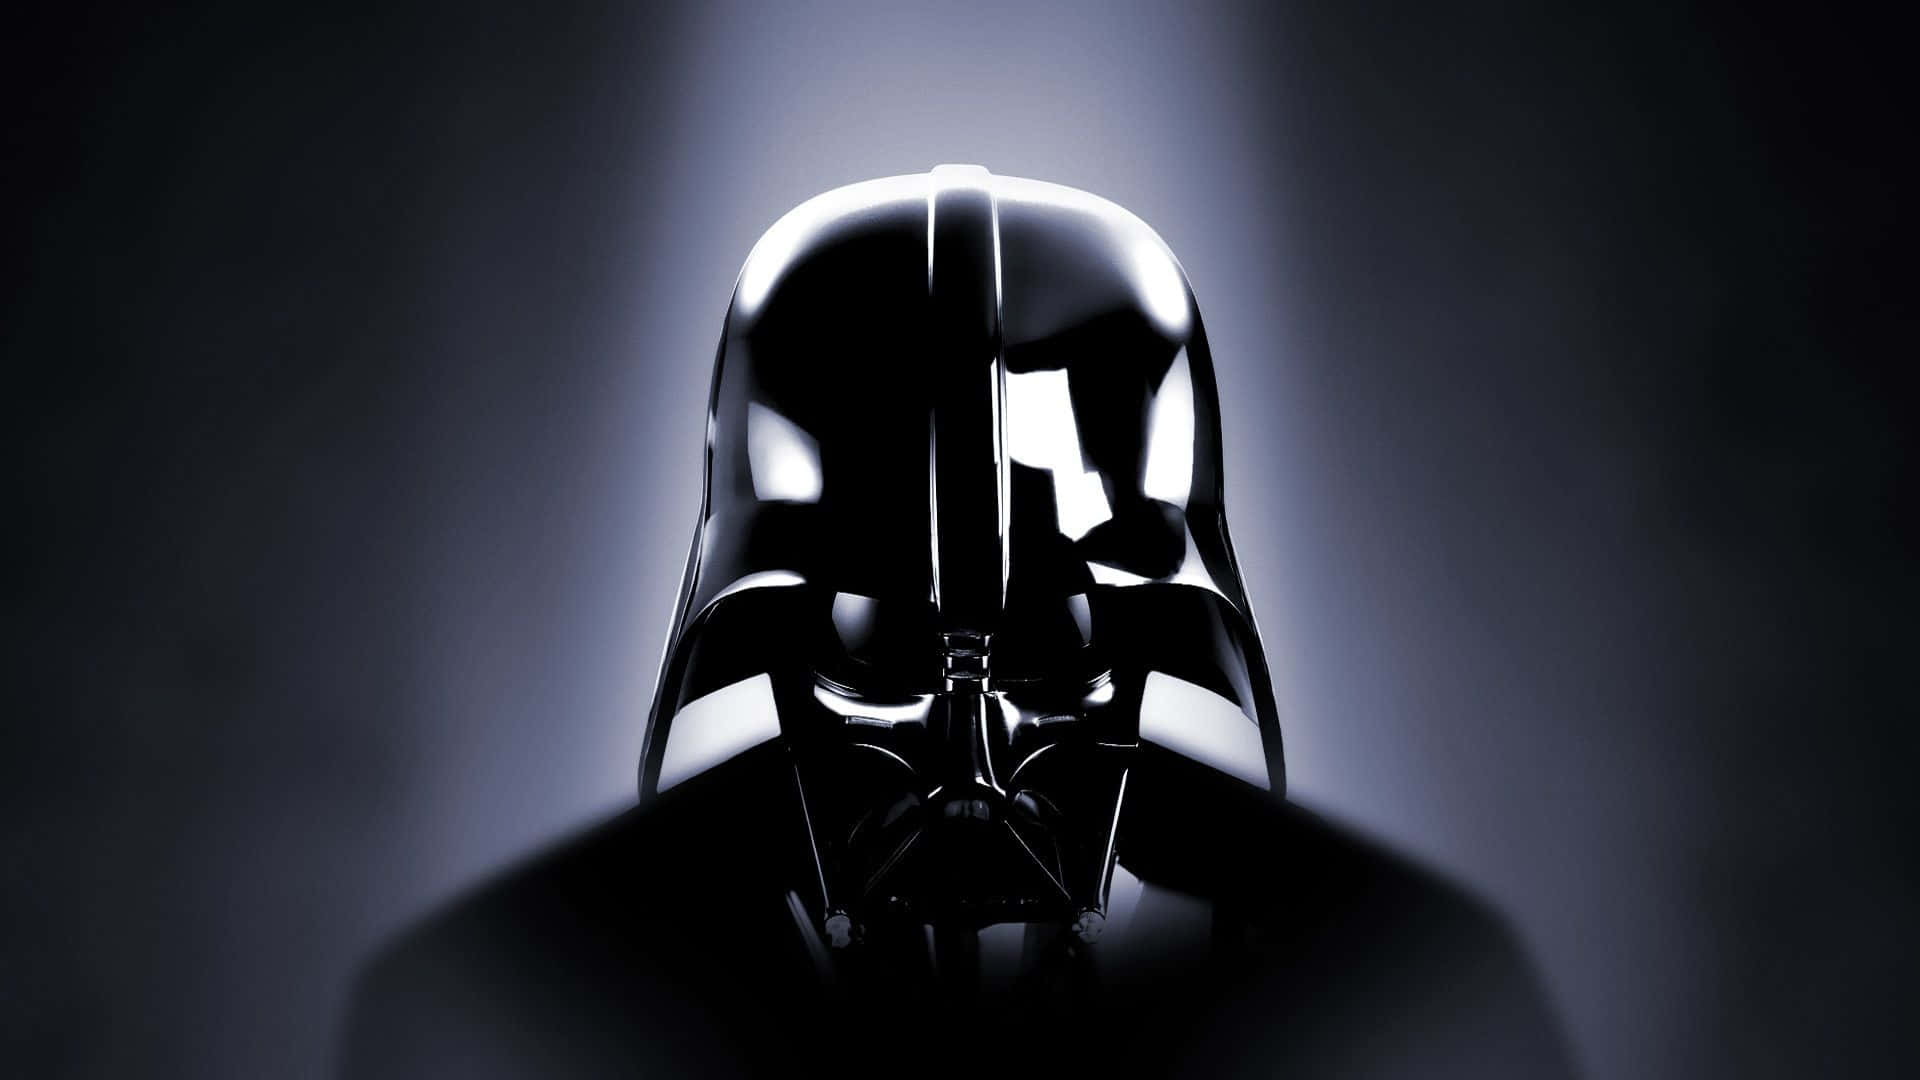 Imágenesde Darth Vader